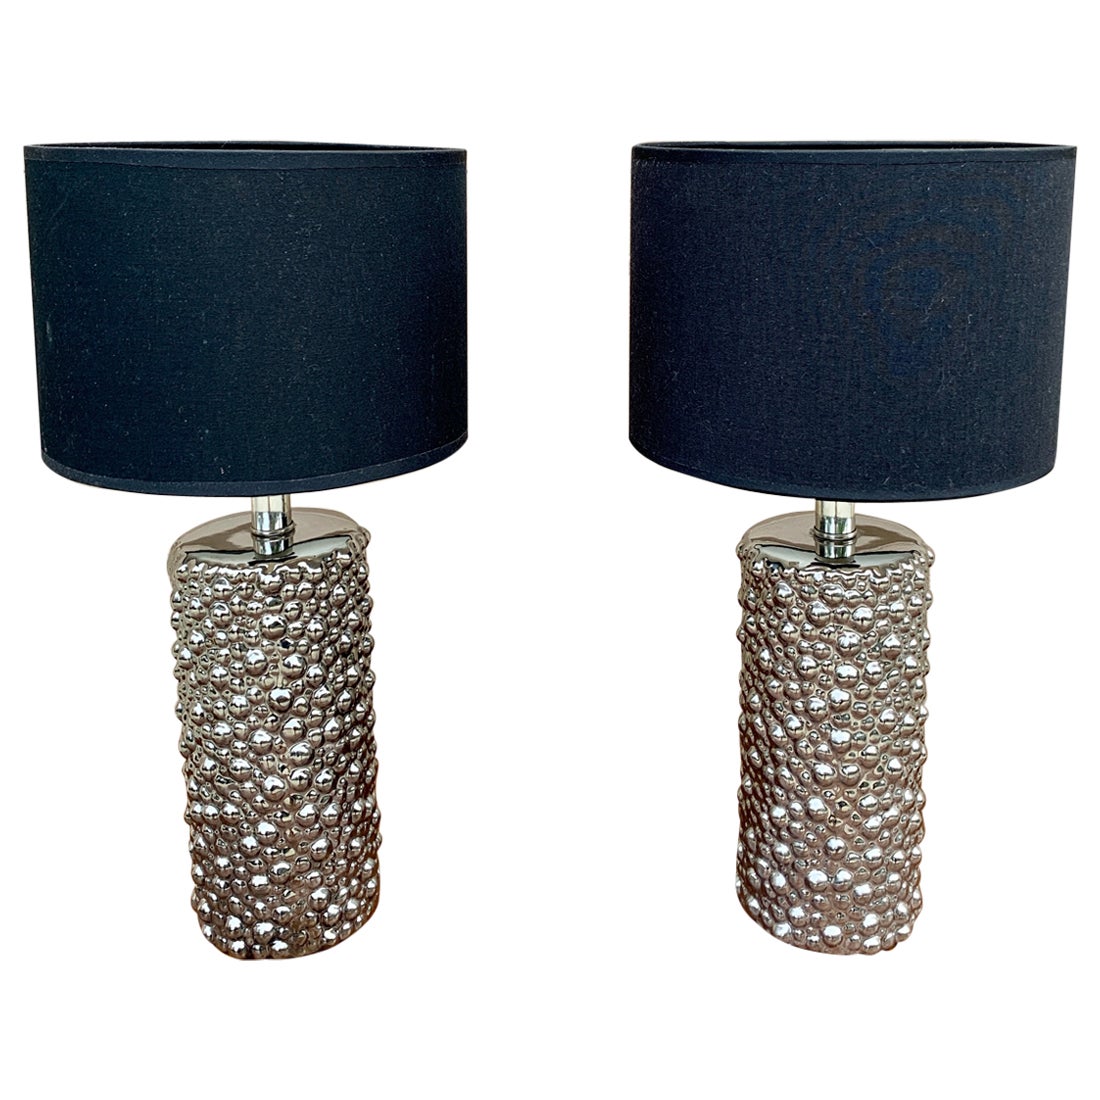 Paire de lampes de table contemporaines en chrome avec abat-jour tambour noir